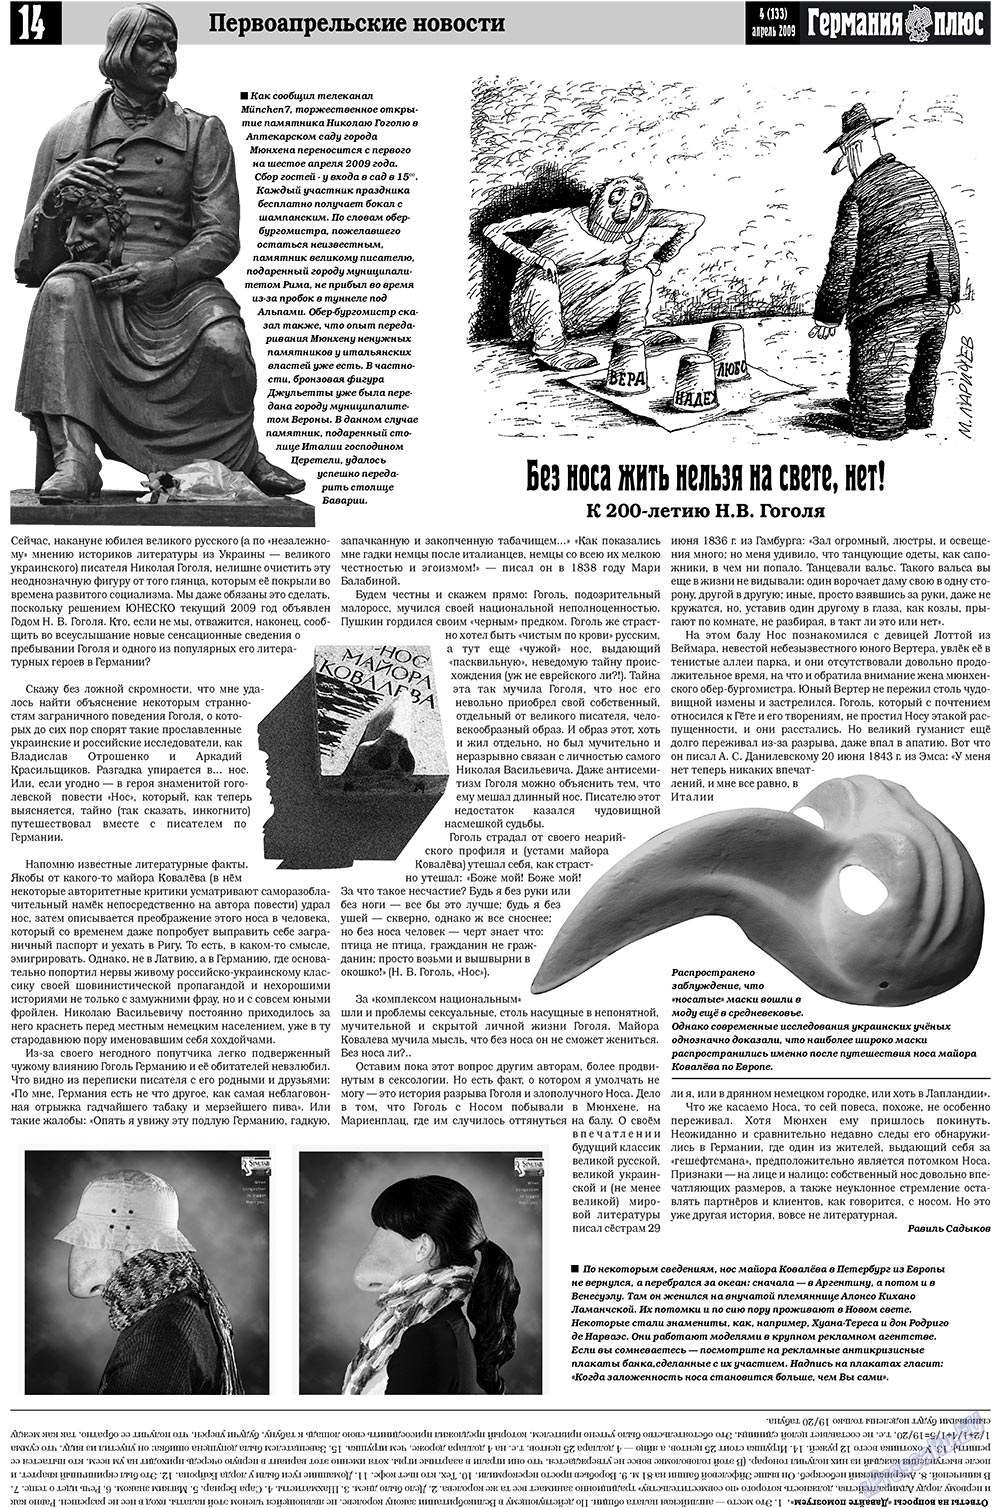 Германия плюс, газета. 2009 №4 стр.18